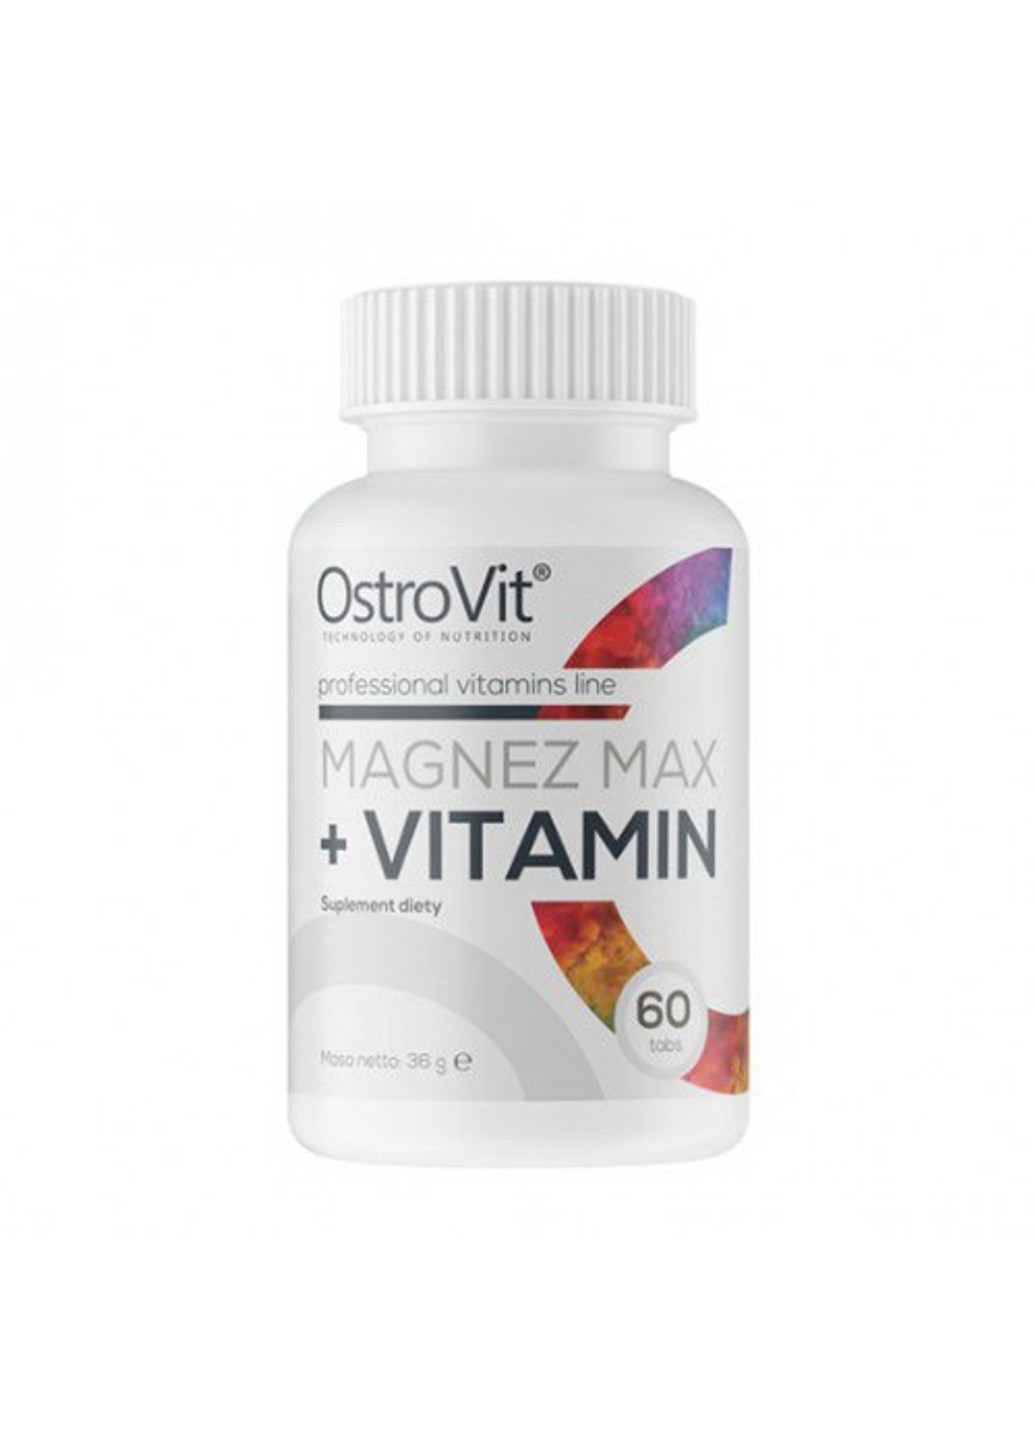 Мінеральний комплекс з магнієм Magnez Max + Vitamin (60 таб) острови Ostrovit (255409431)